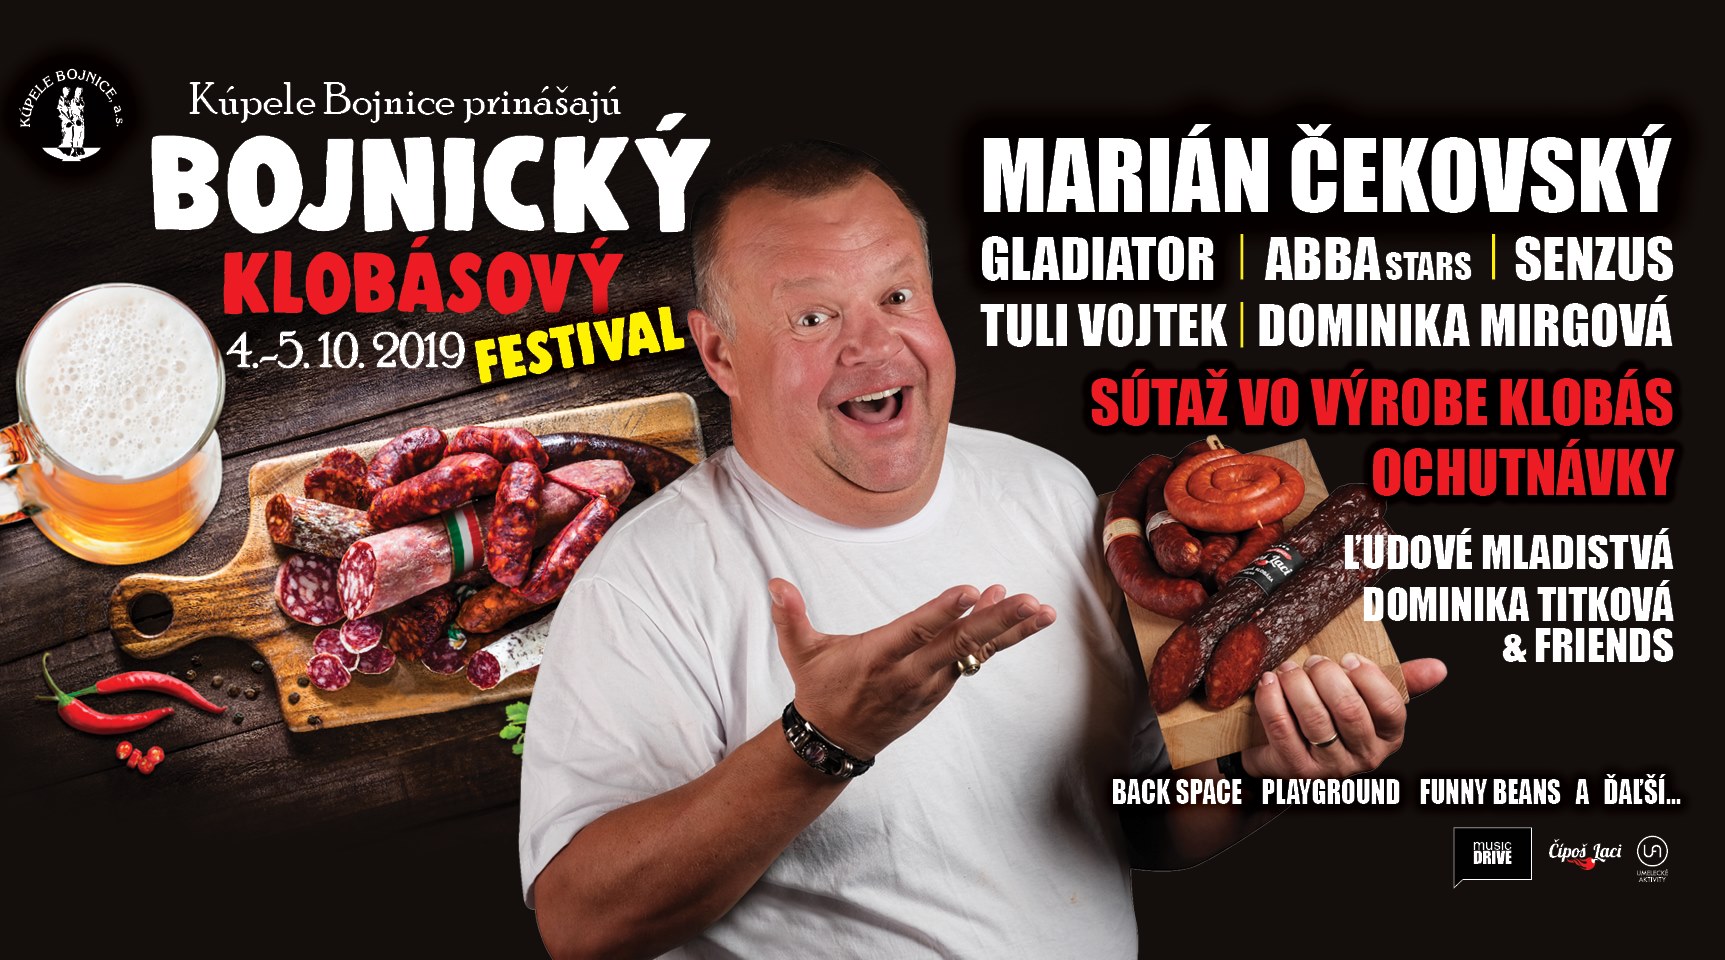 Bojnick klobsov festival 2019 - 1. ronk